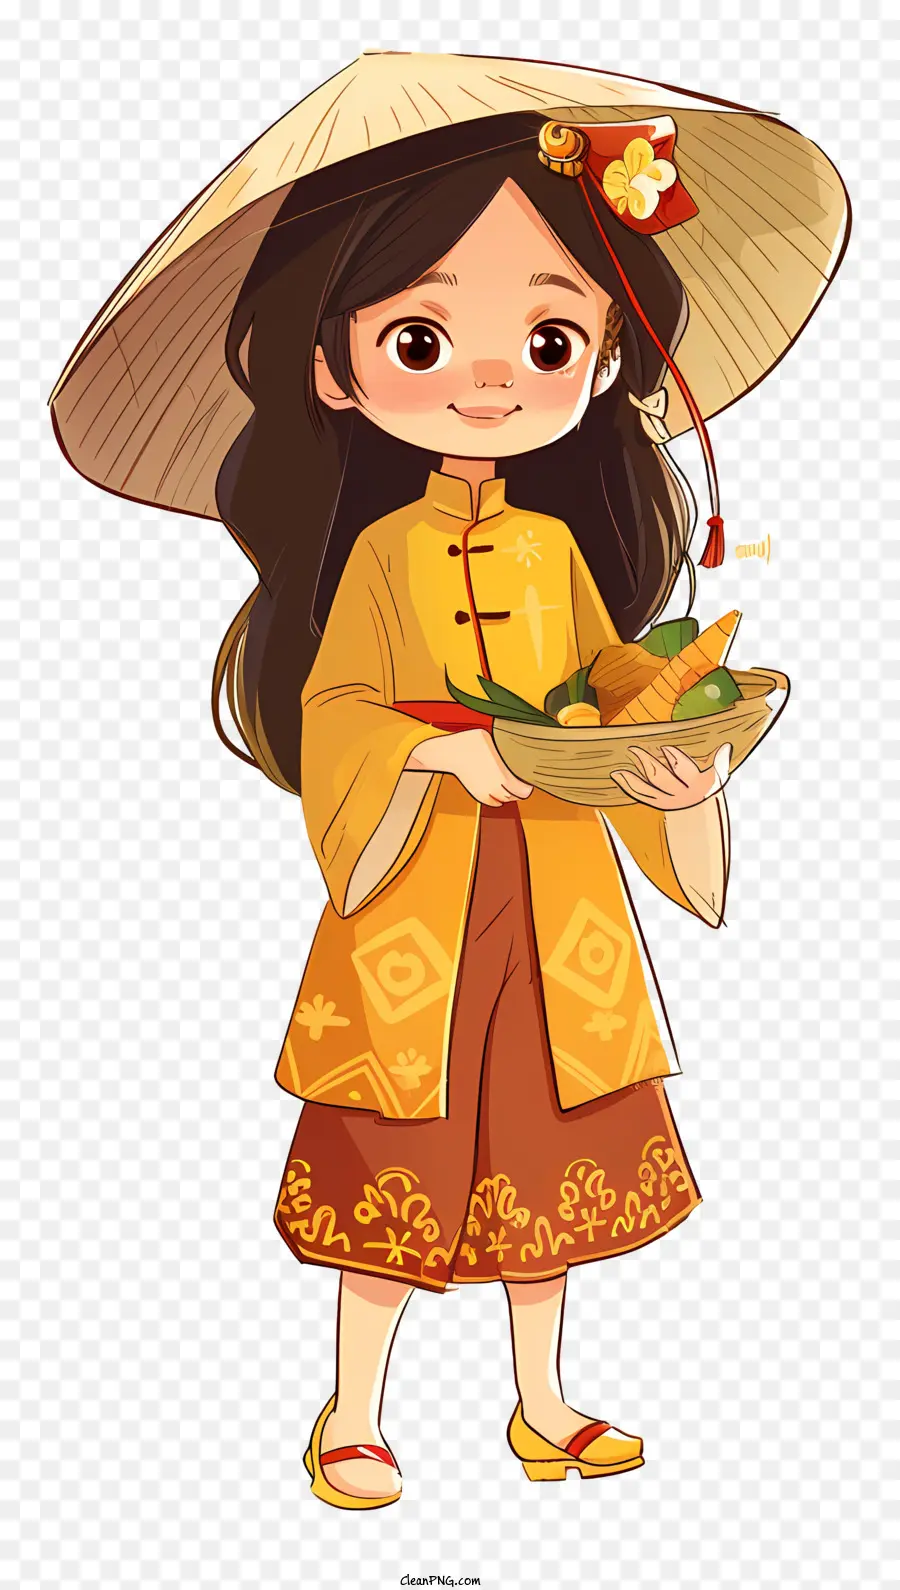 Vietnamesisches Mädchen Traditionales orientalisches Kostüm Asiatische Kultur traditionelle Mahlzeiten Asiatische Küche - Junge Frau im orientalischen Kostüm hält Food Bowl